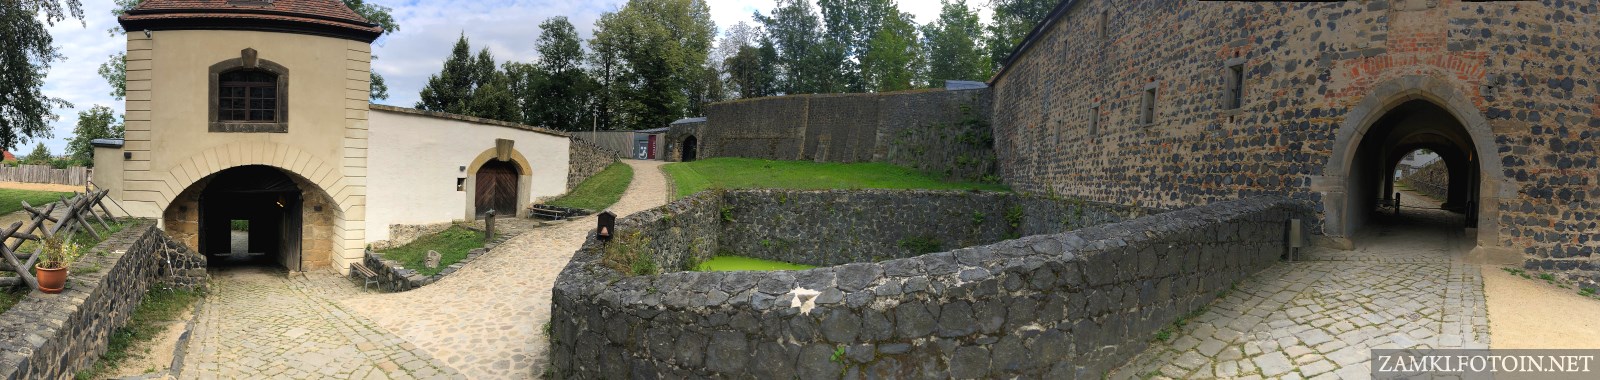 Panorama zamku Stolpen